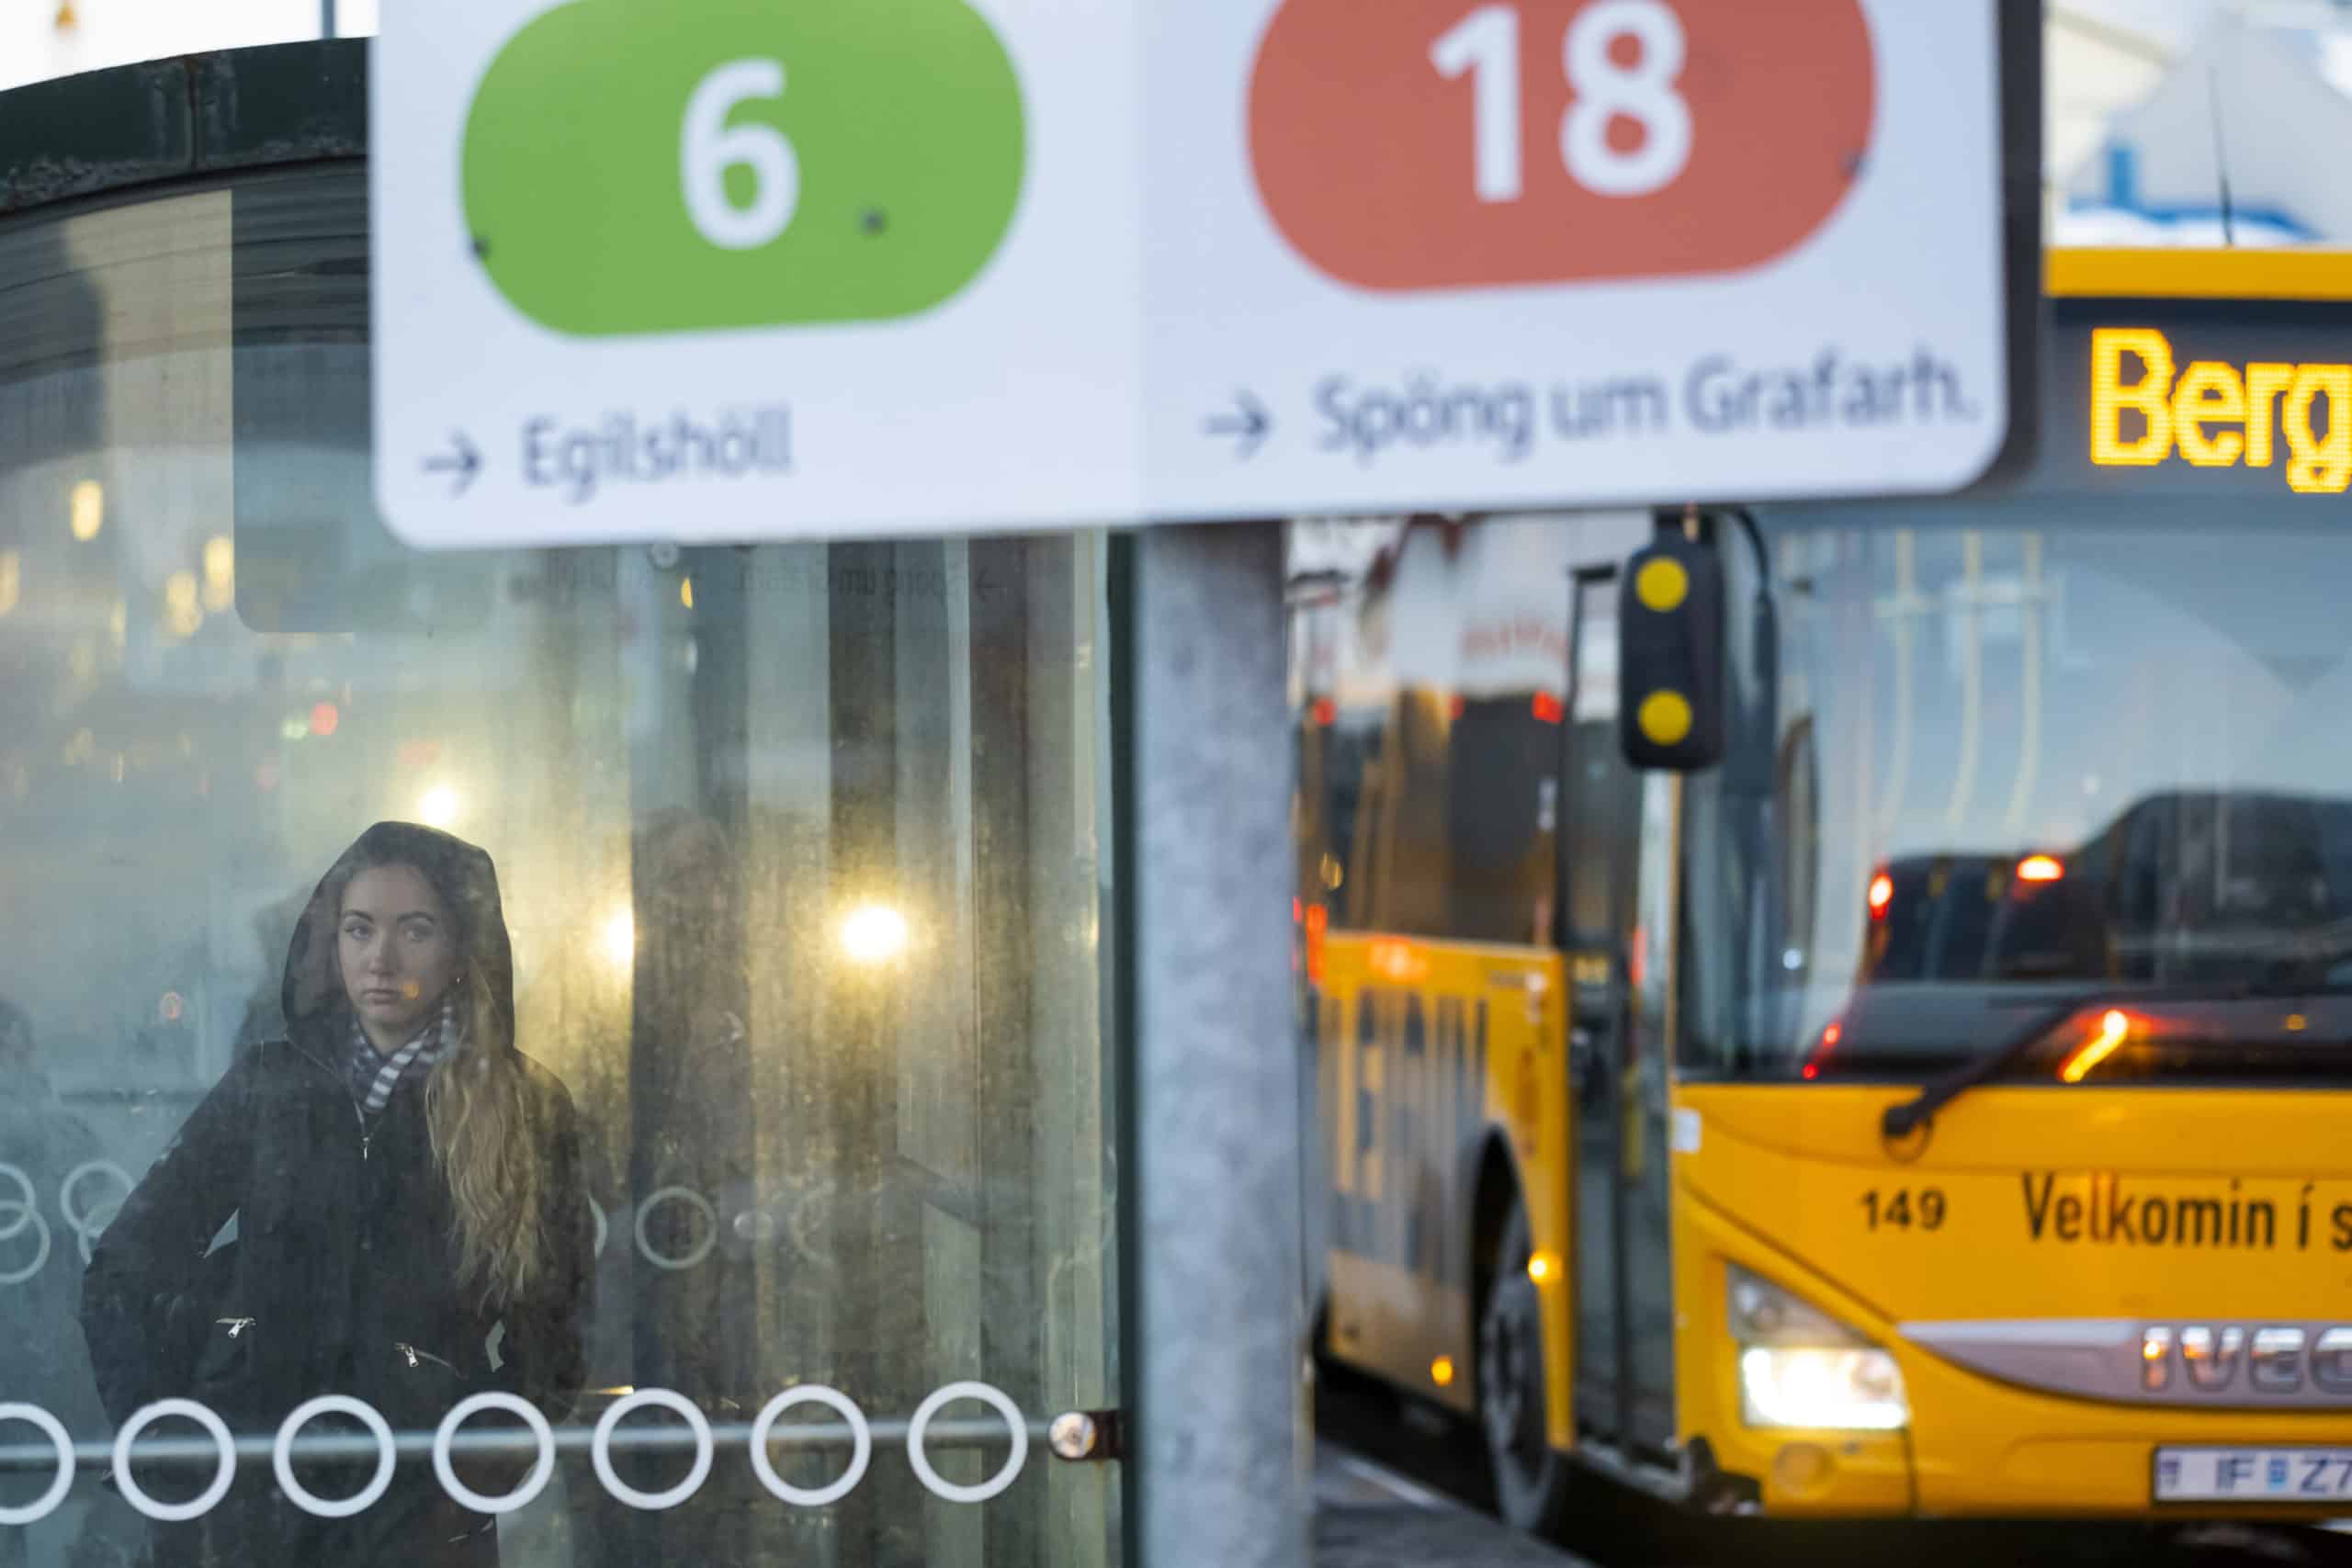 Reykjavík Public Buses See Increase in Ridership